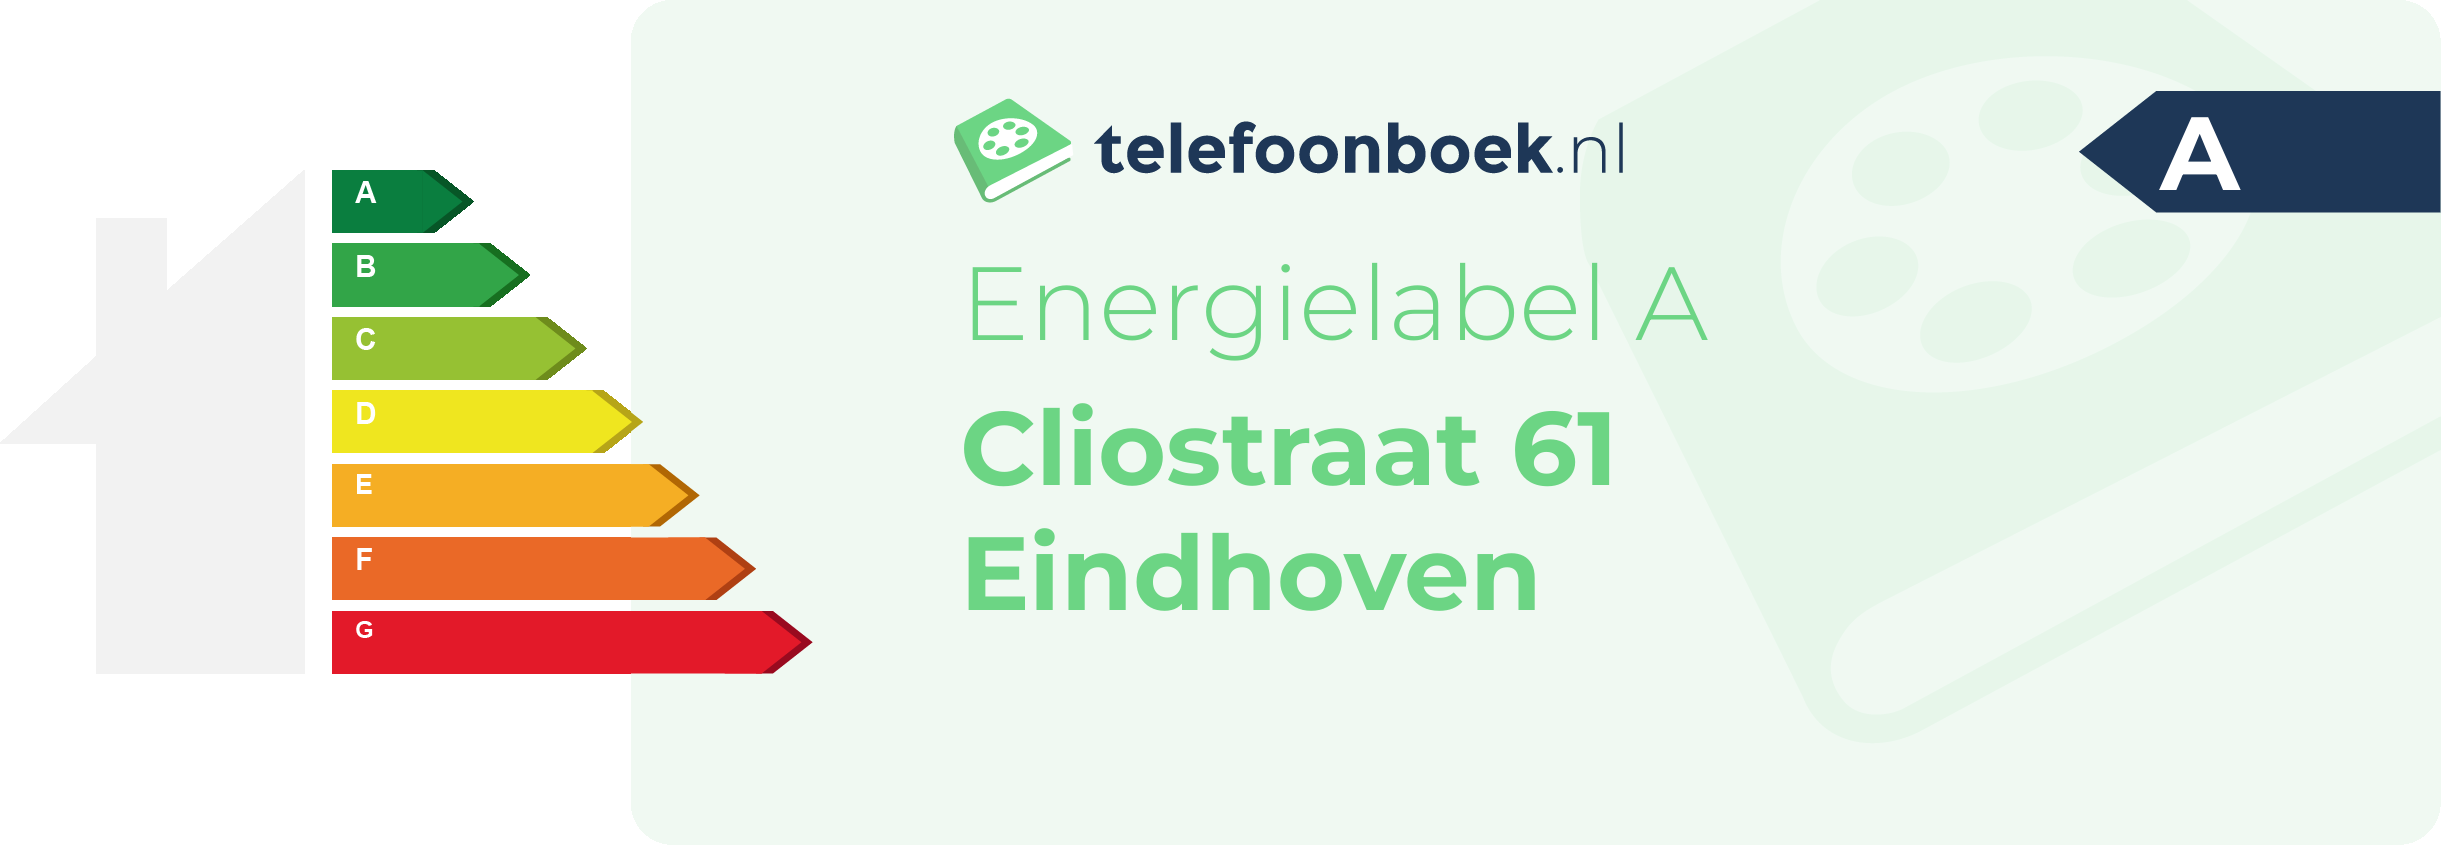 Energielabel Cliostraat 61 Eindhoven